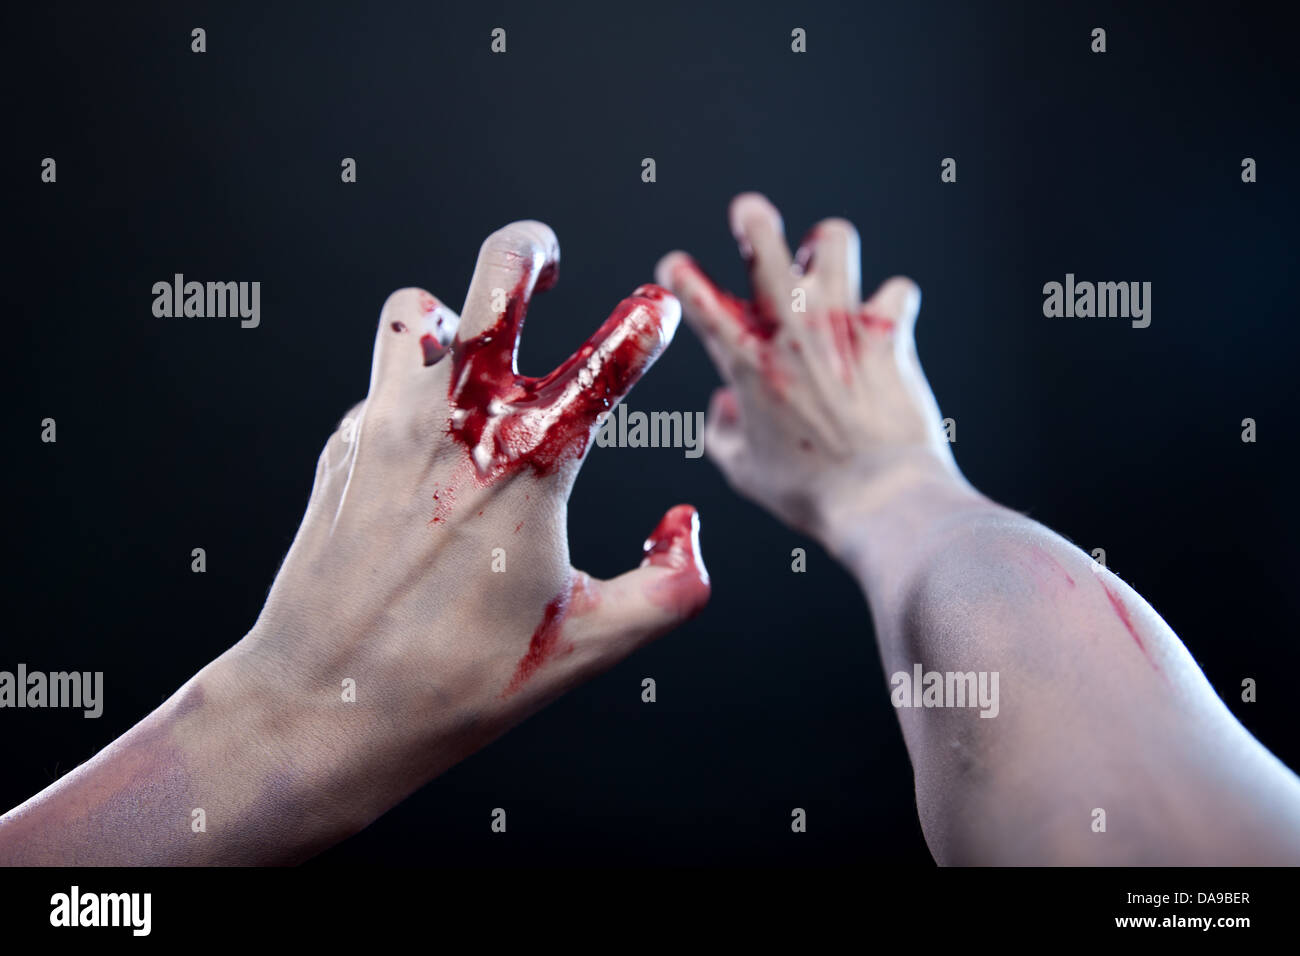 Pálidas manos zombie sangrienta, Foto de estudio sobre fondo gris Foto de stock